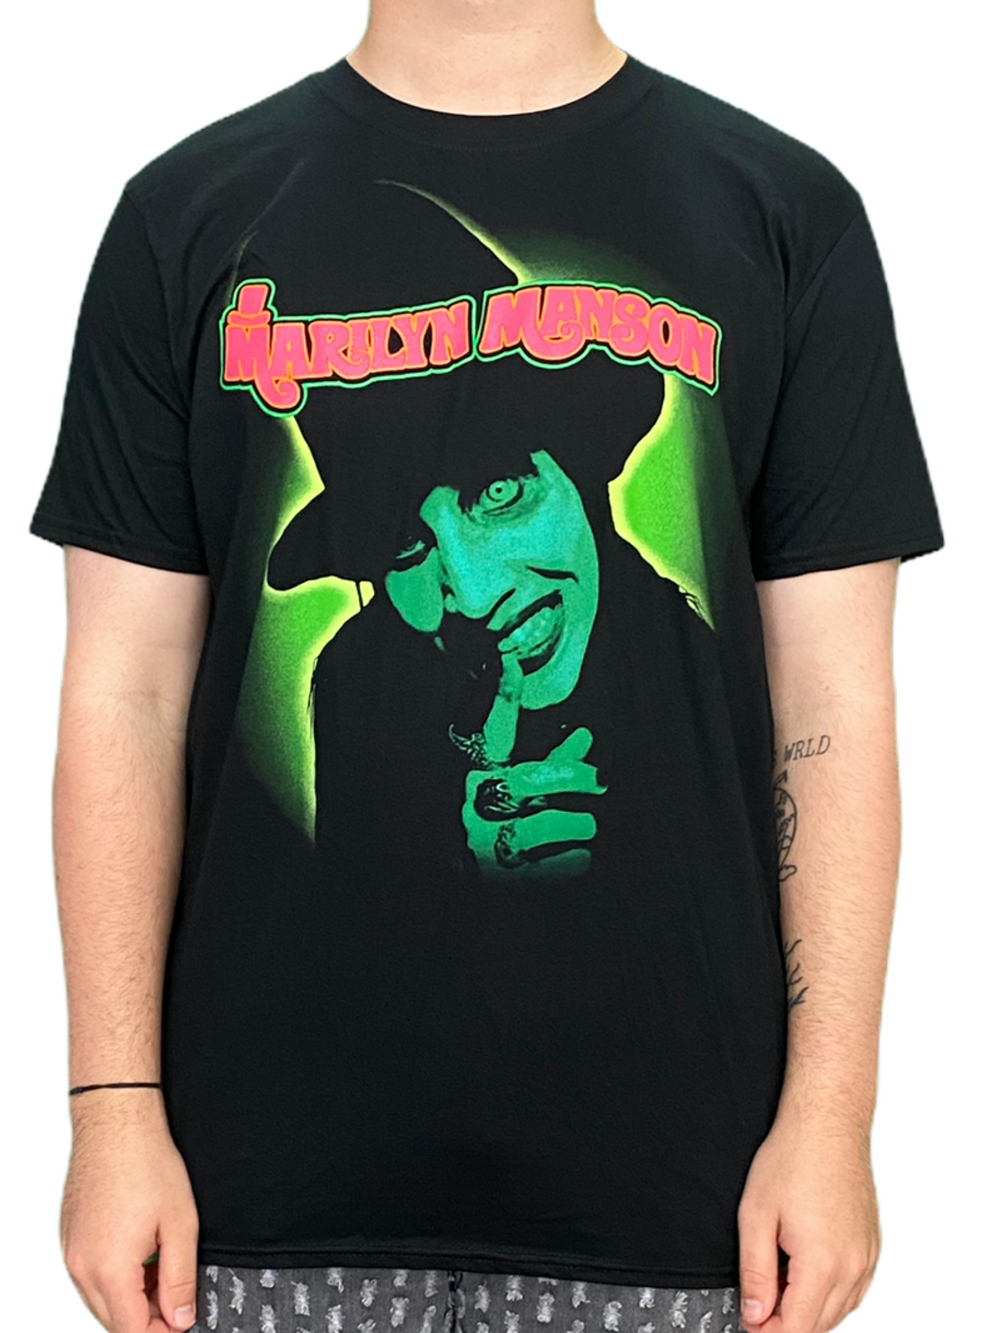 Marilyn Manson Children Unisex Official T Shirt Brand New Various Sizes